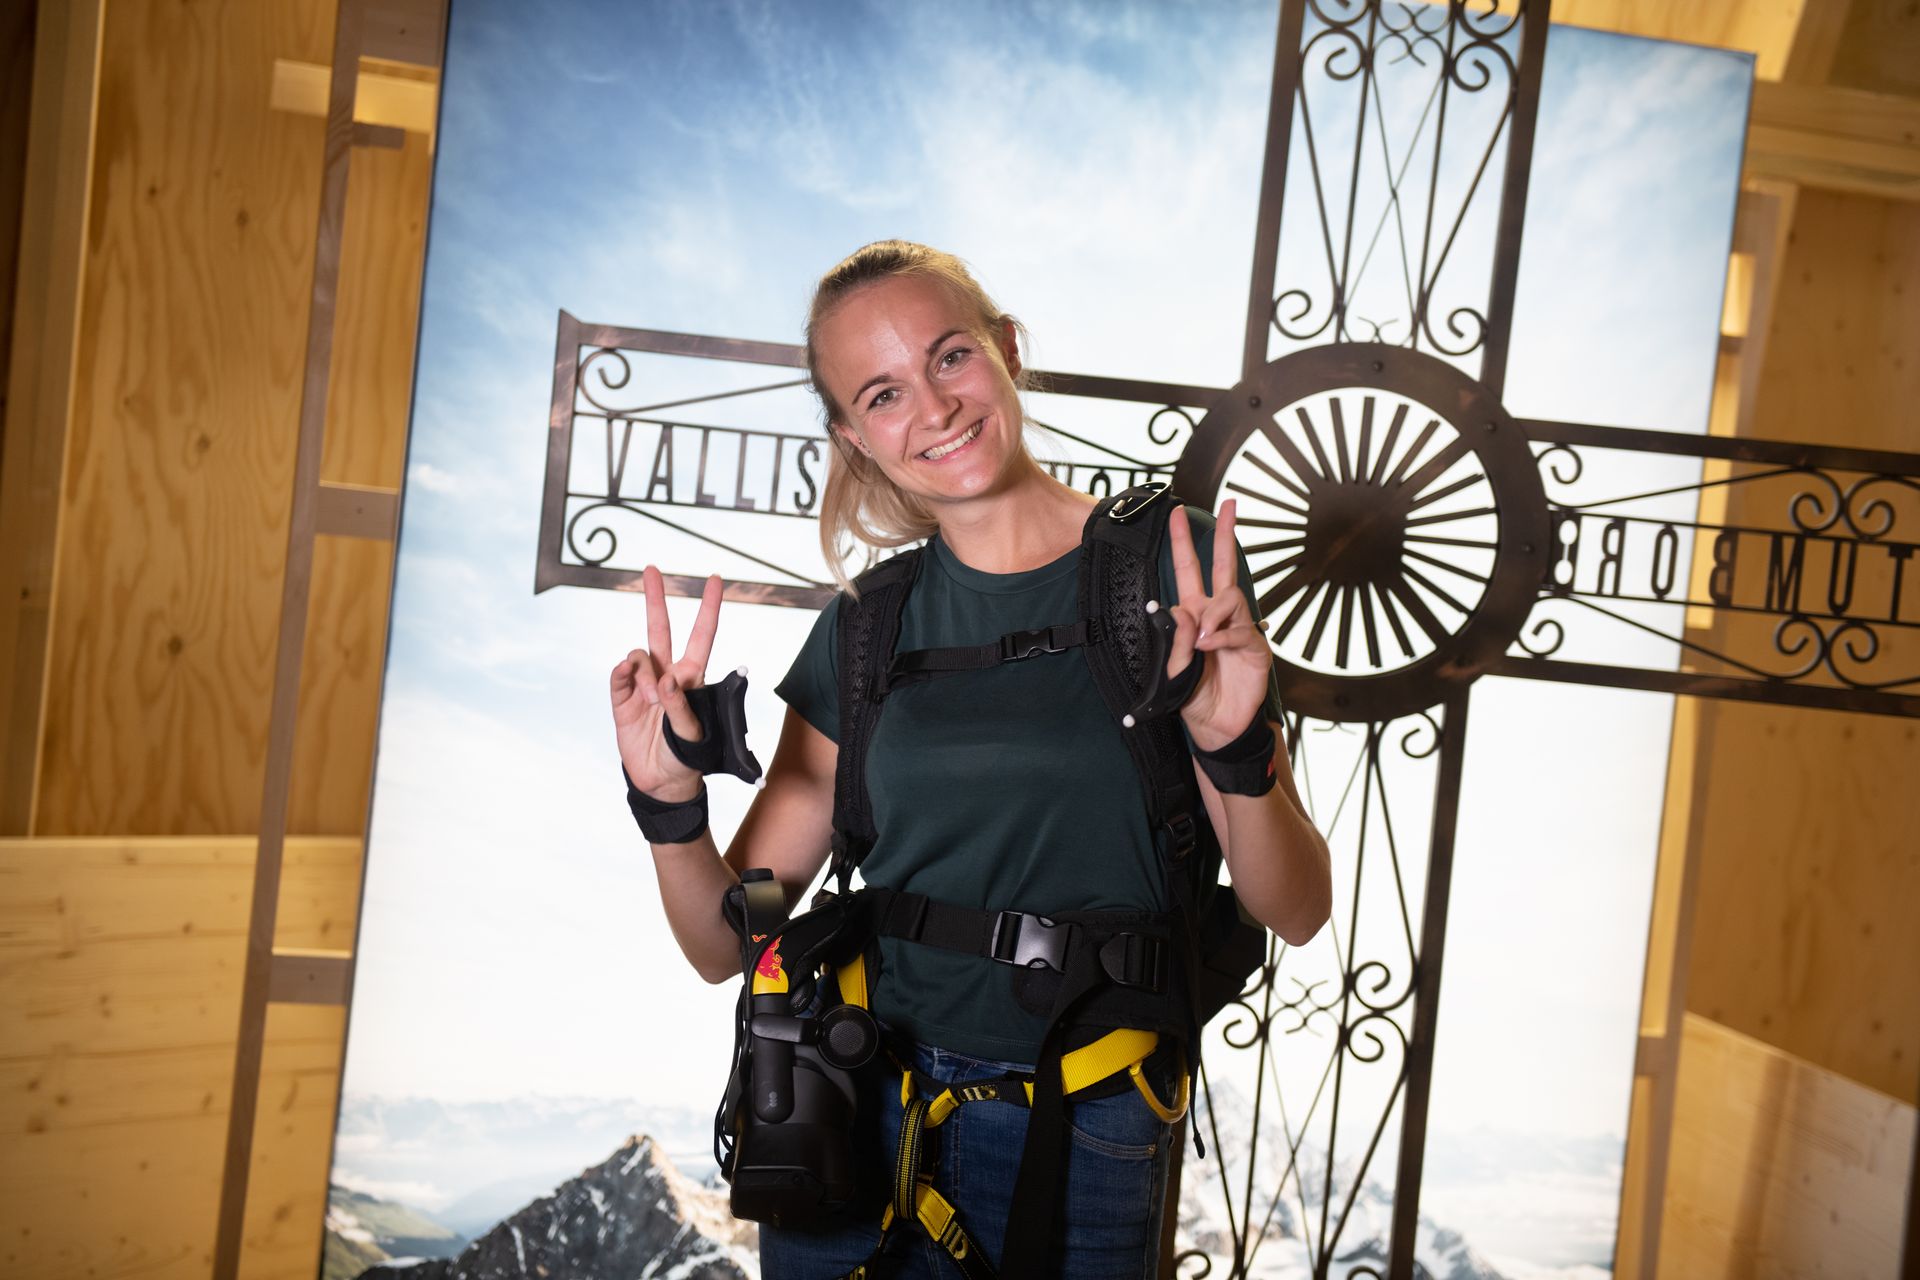 В Швейцарския музей на транспорта в Люцерн е възможно виртуално да се справите с изкачването на Матерхорн, „въоръжени“ с очила за виртуална реалност и колан за скално катерене: това е инициатива на Red Bull Switzerland и различни партньори, наречена „The Edge Matterhorn VR”, чрез който е възпроизведено истинското изкачване на алпинистите Джереми Хайц и Сам Антаматен, планински водачи на Цермат, като също така осигурява 4D ефекти на вятъра, вибрации, текстури и множество обекти или сценични елементи